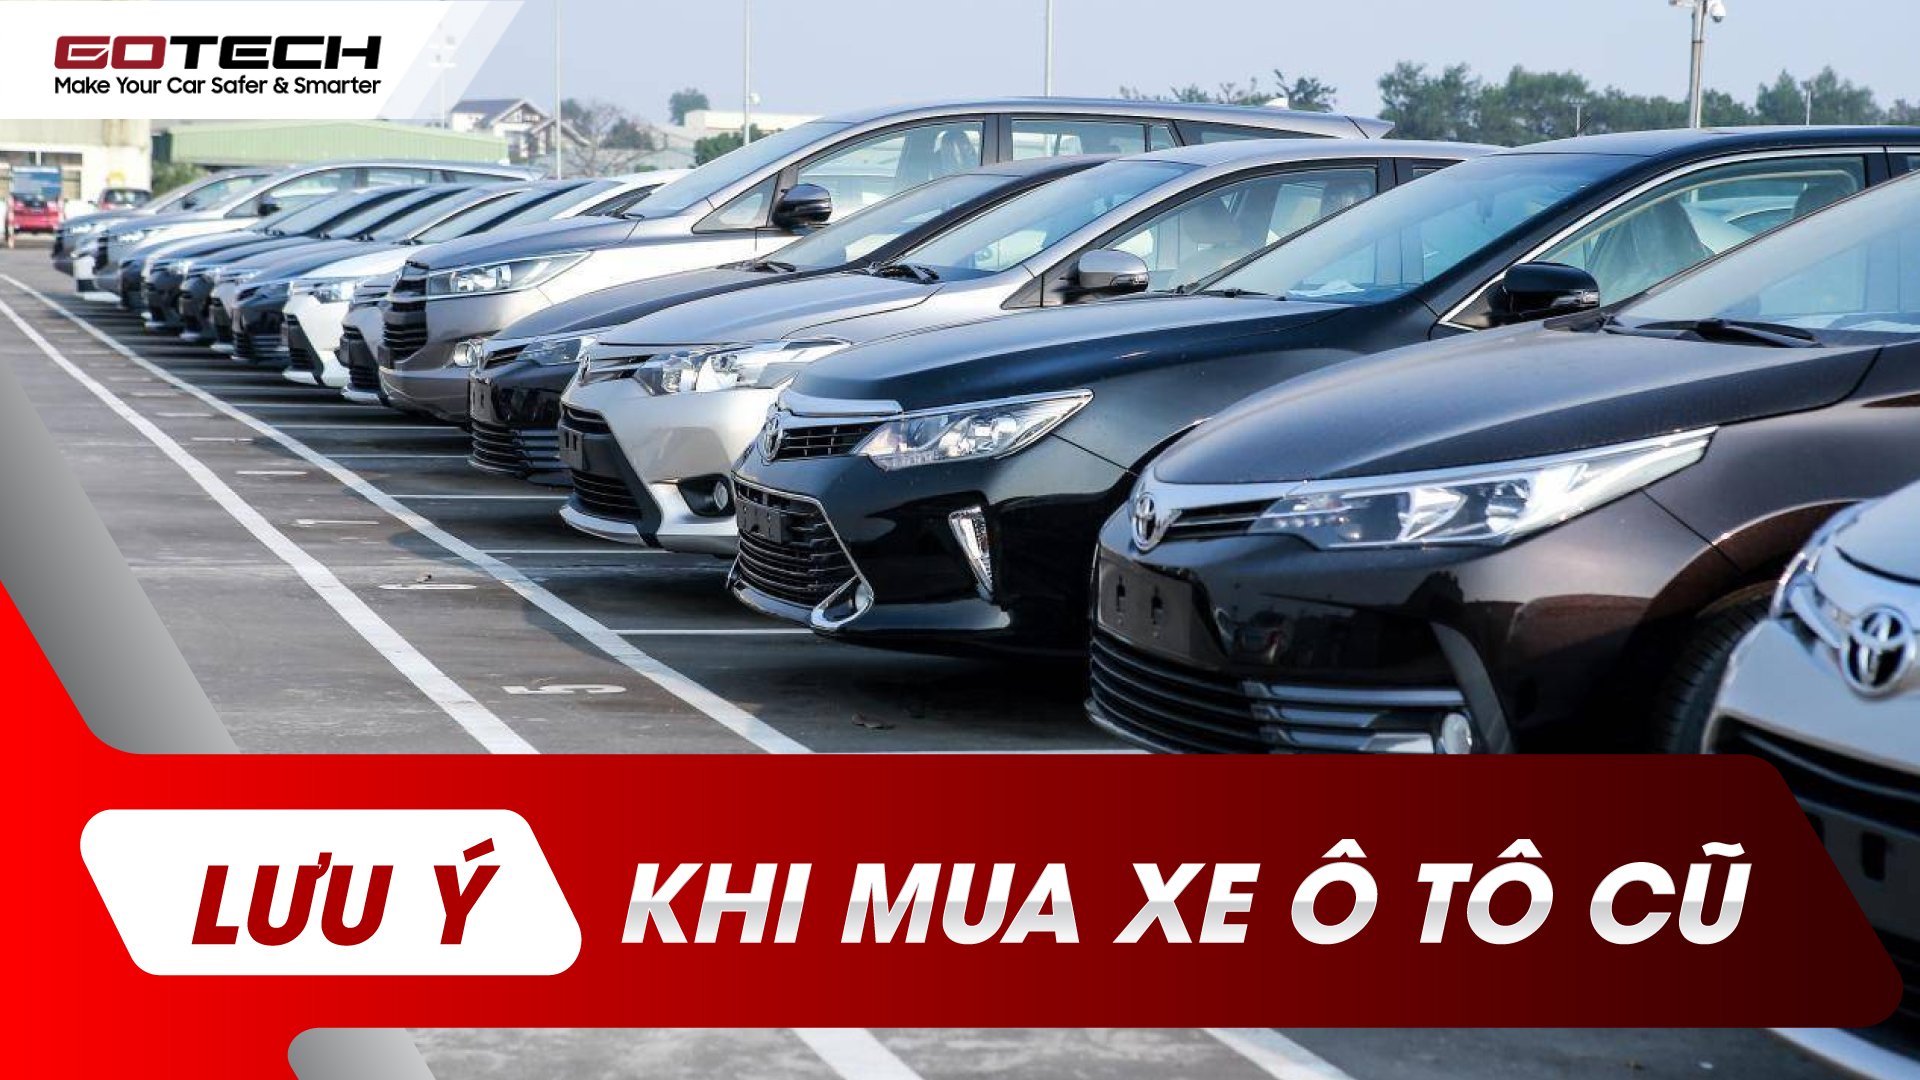 Thu mua ô tô cũ ô tô đã qua sử dụng giá cao tại TP HCM  TP Hồ Chí Minh   Quận Tân Bình  Ô tô  VnExpress Rao Vặt